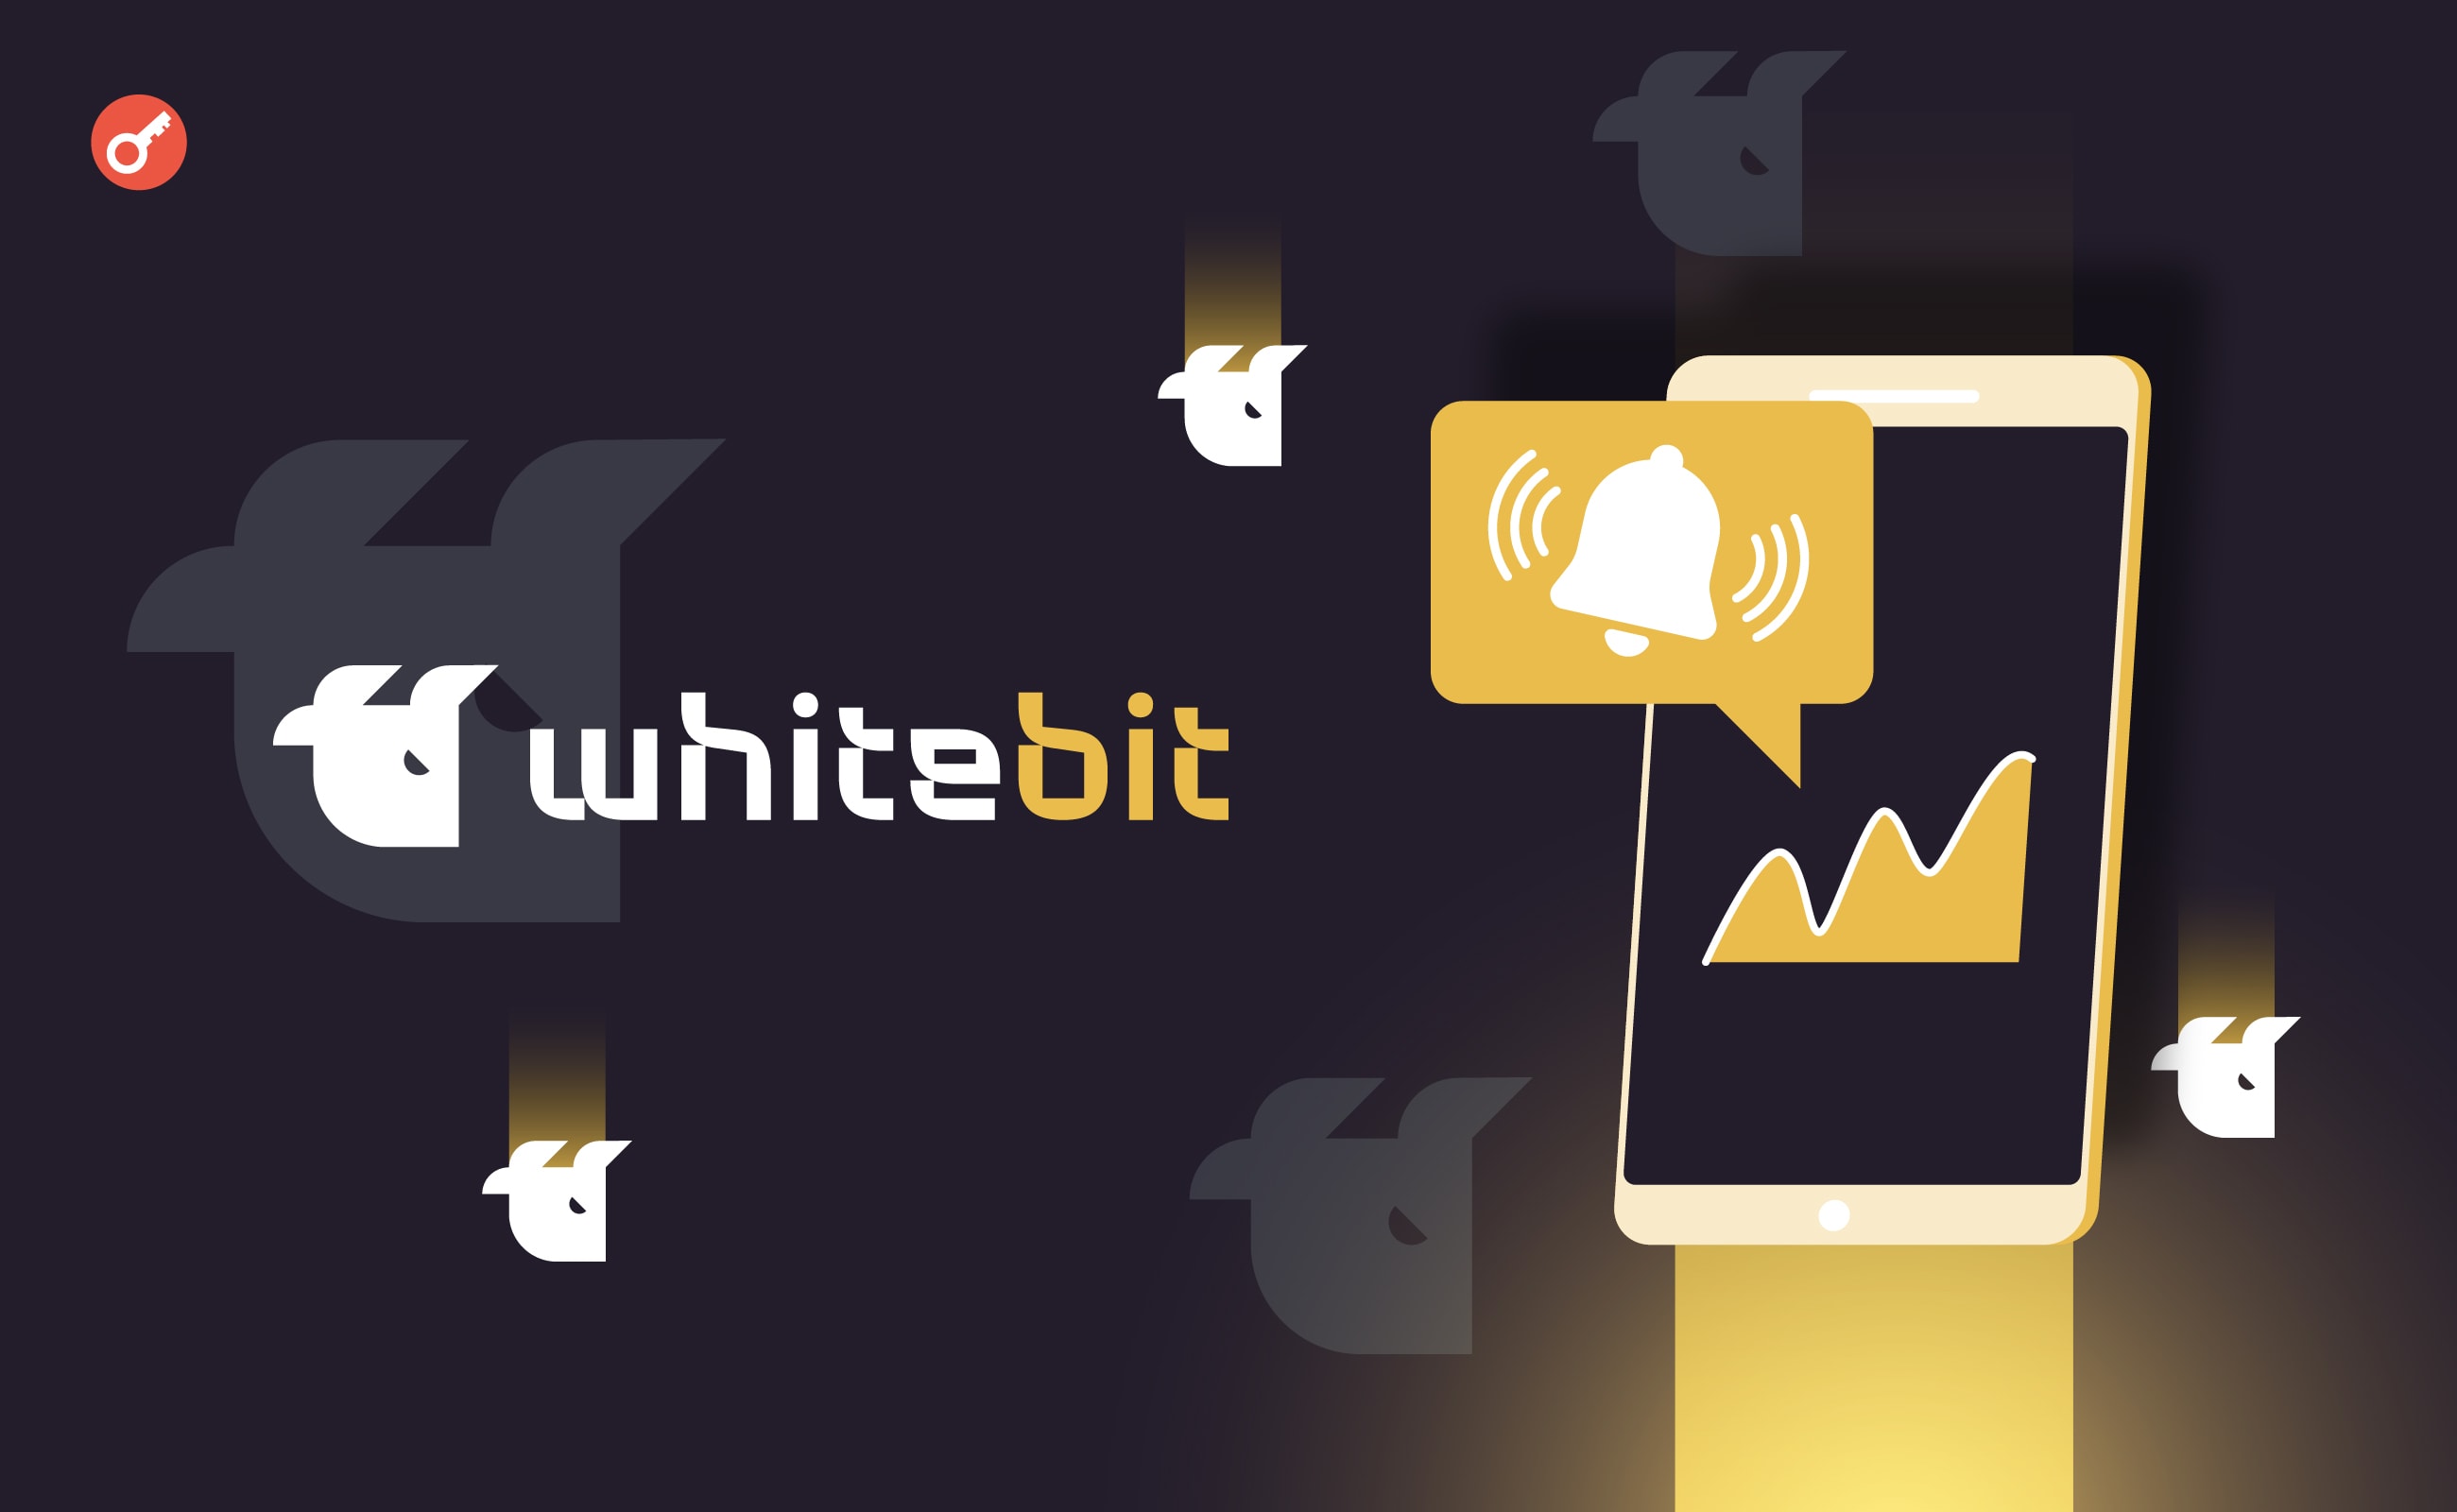 WhiteBIT добавила ценовые оповещения в мобильное приложение. Заглавный коллаж новости.